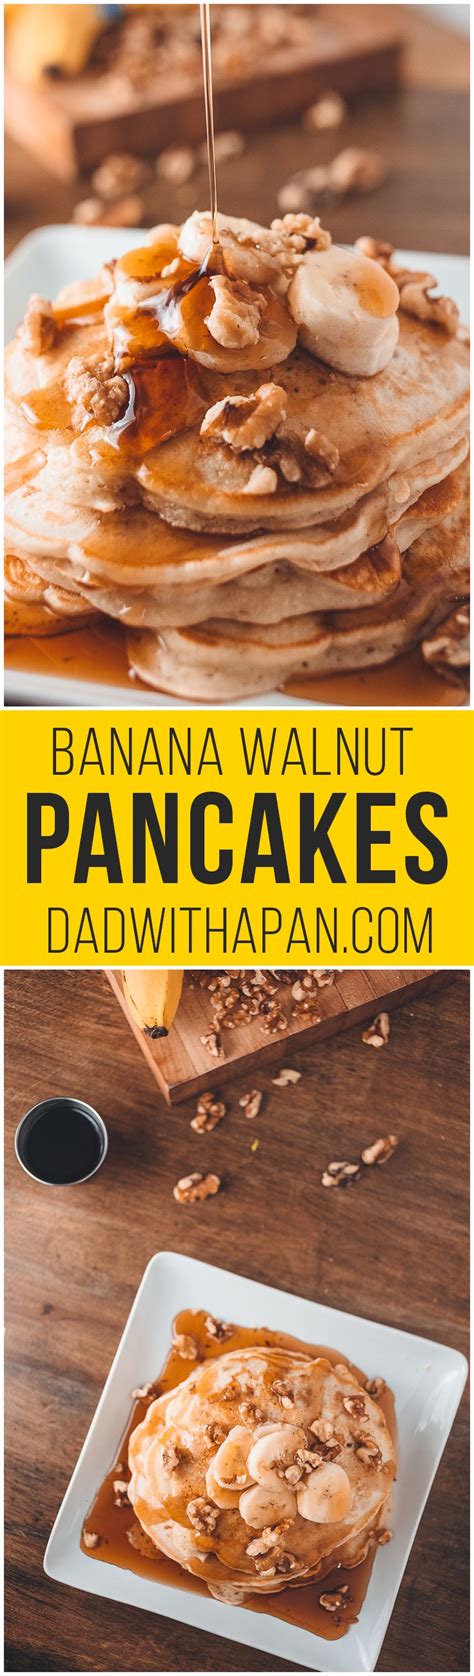 Banana Walnut Pancakes Dad With A Pan